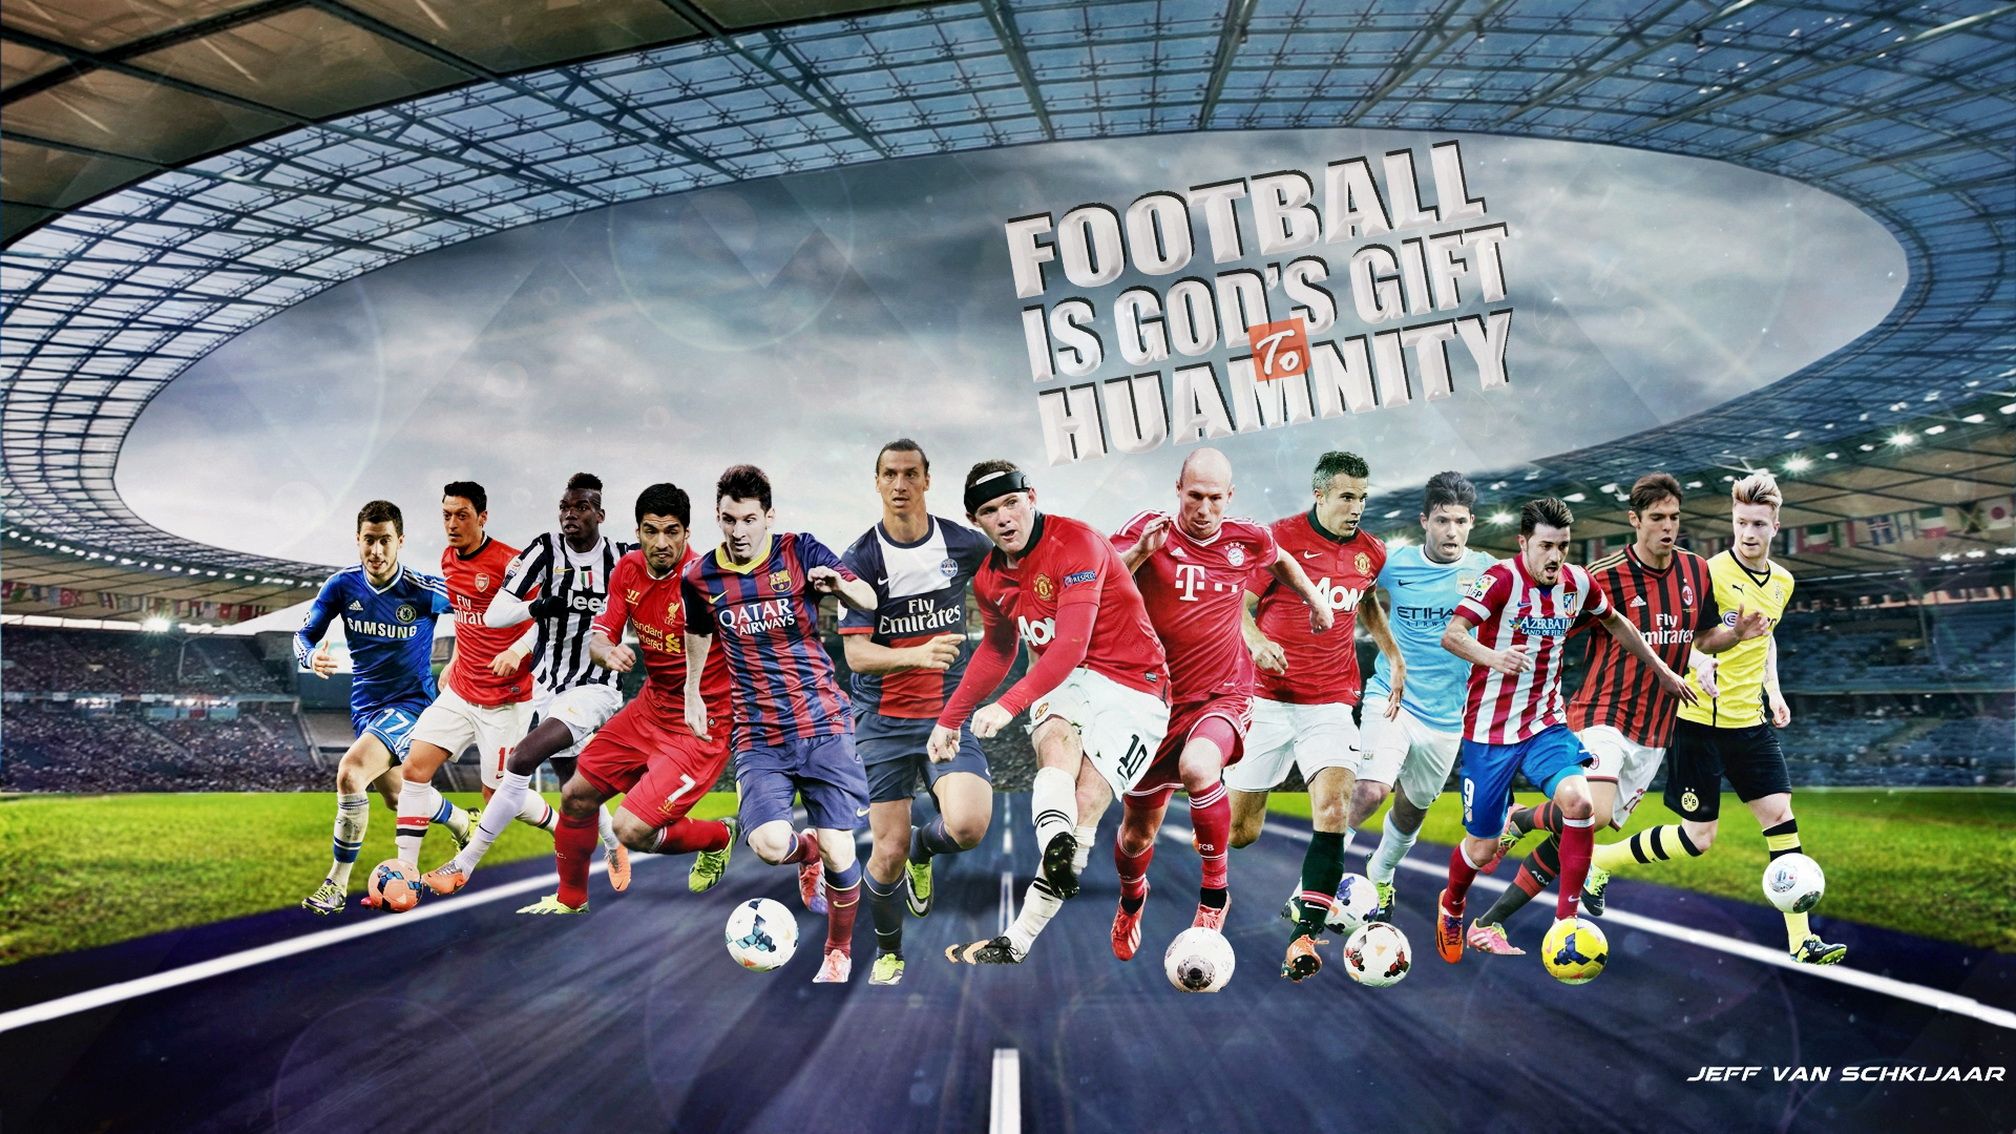 Other Wallpaper Football Wallpaper